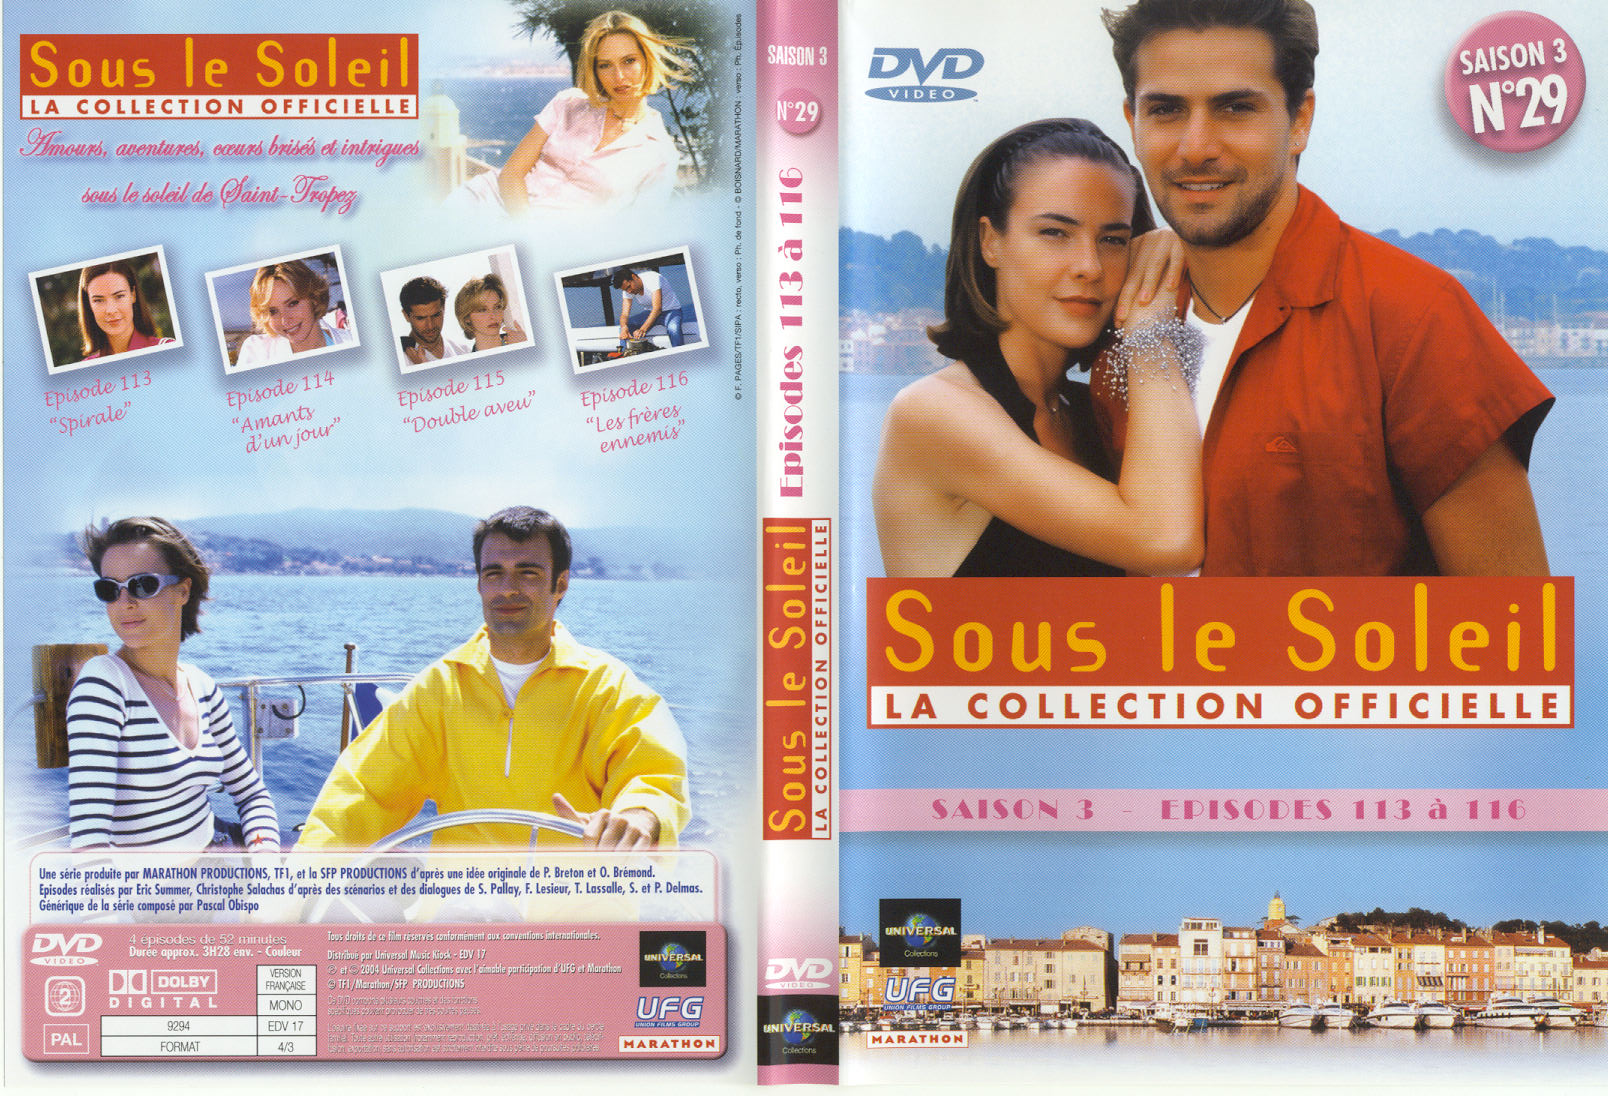 Jaquette DVD Sous le soleil saison 3 vol 29